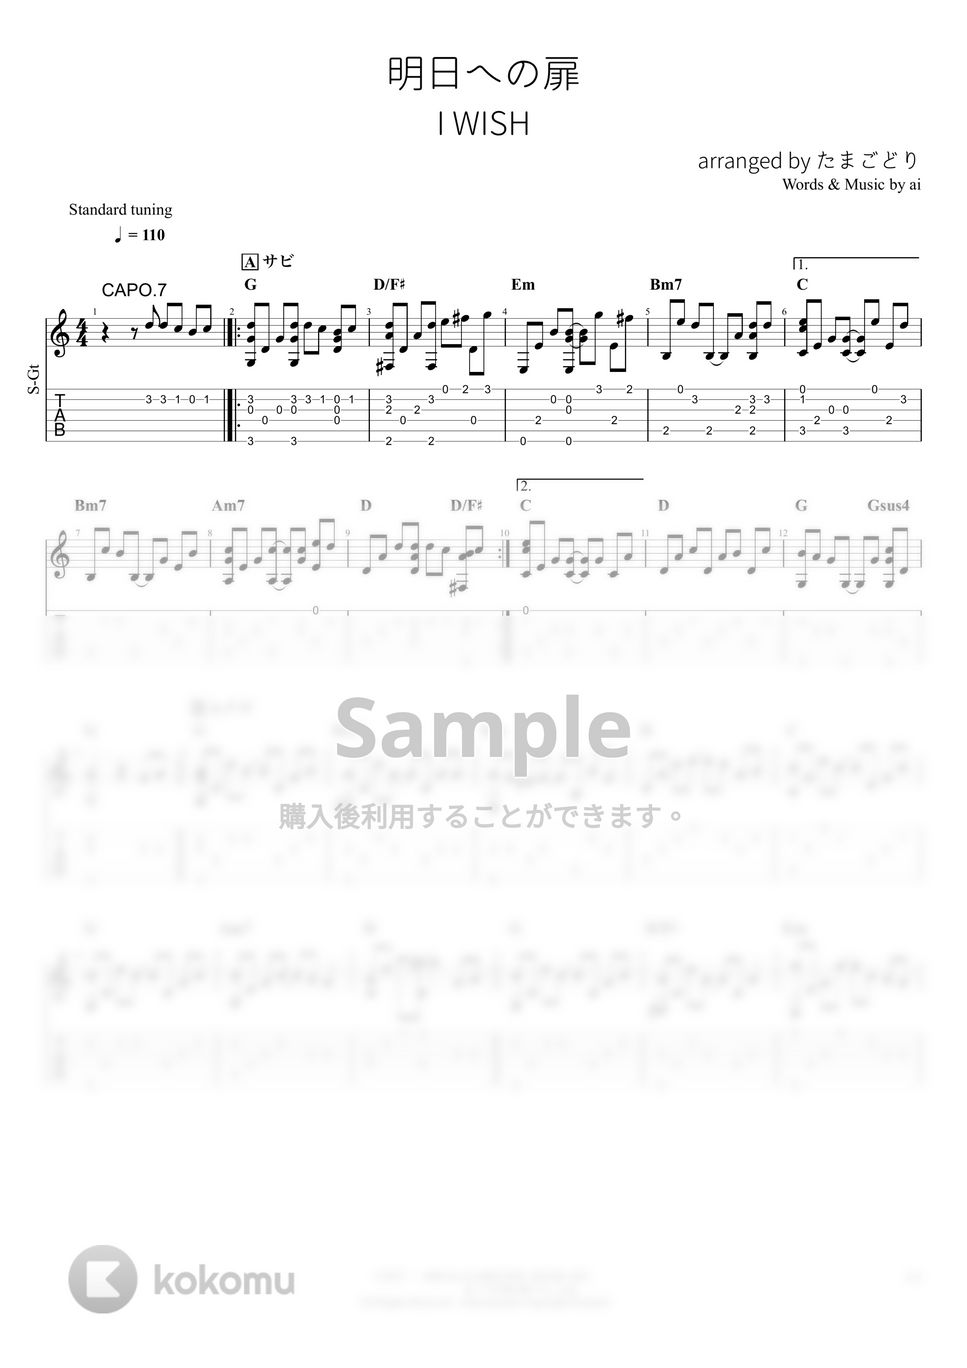 I WiSH - 明日への扉 (ソロギター) by たまごどり